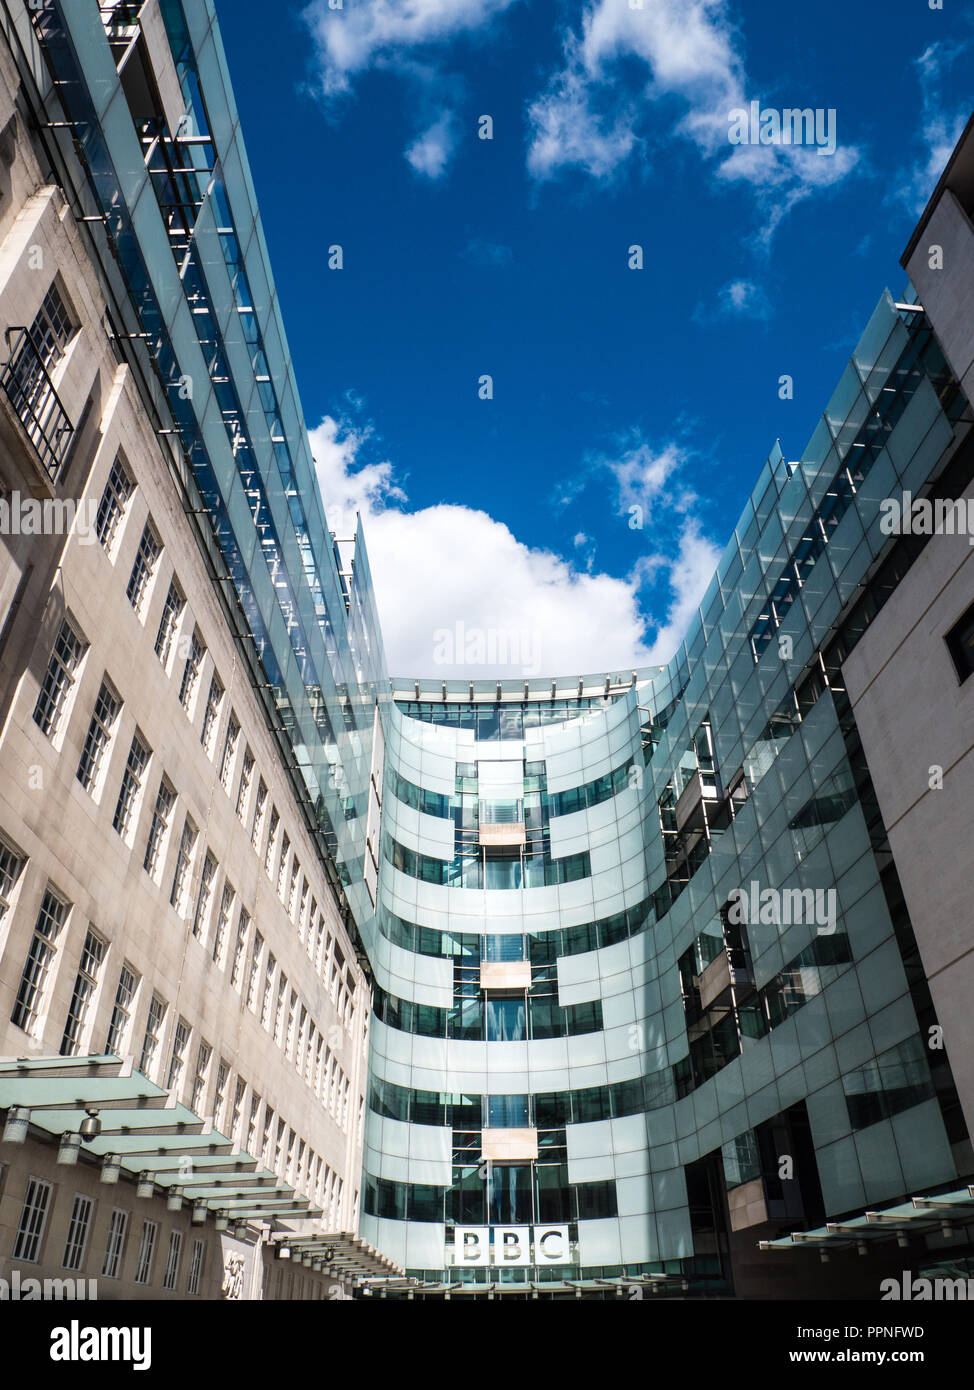 Nouveau bâtiment, la maison BBC Television Centre, Portland Place, Marylebone, London, England, UK, FR. Banque D'Images